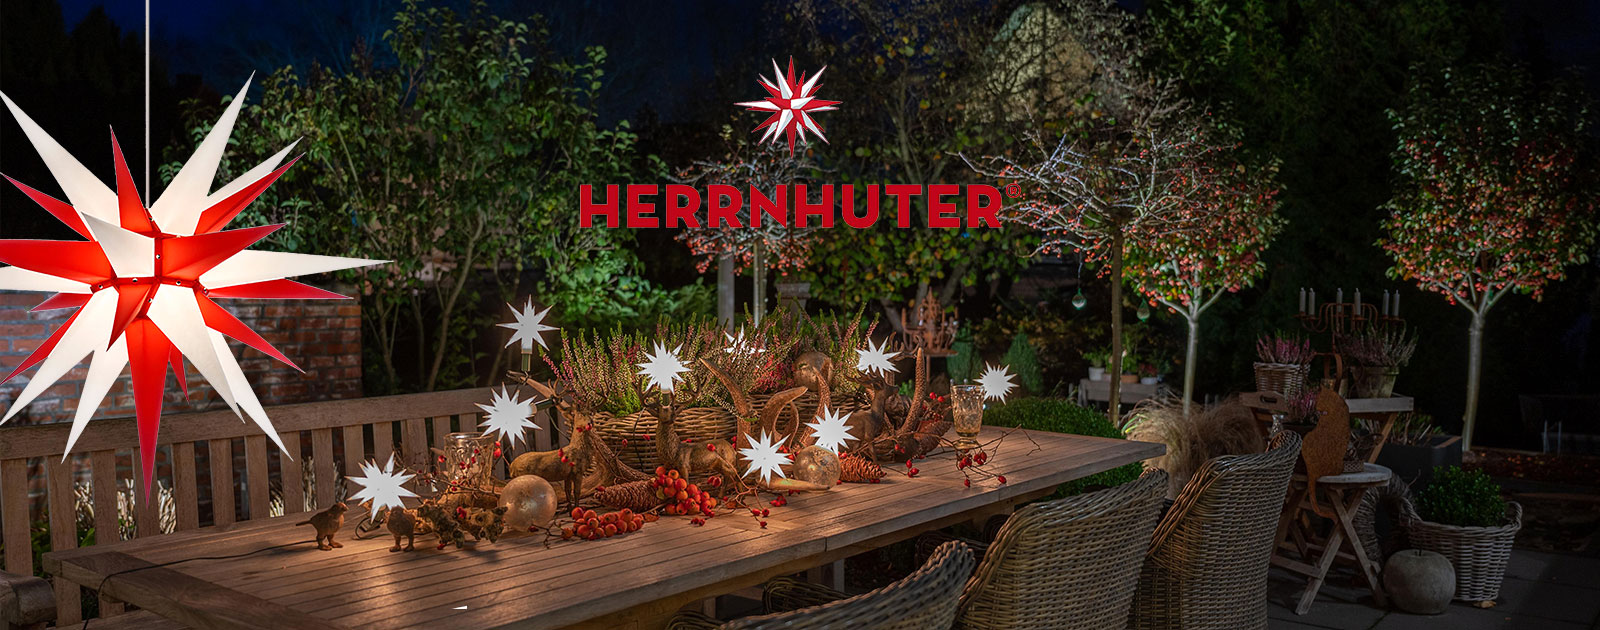 Herrnhuter Sterne - Weihnachtsbeleuchtung